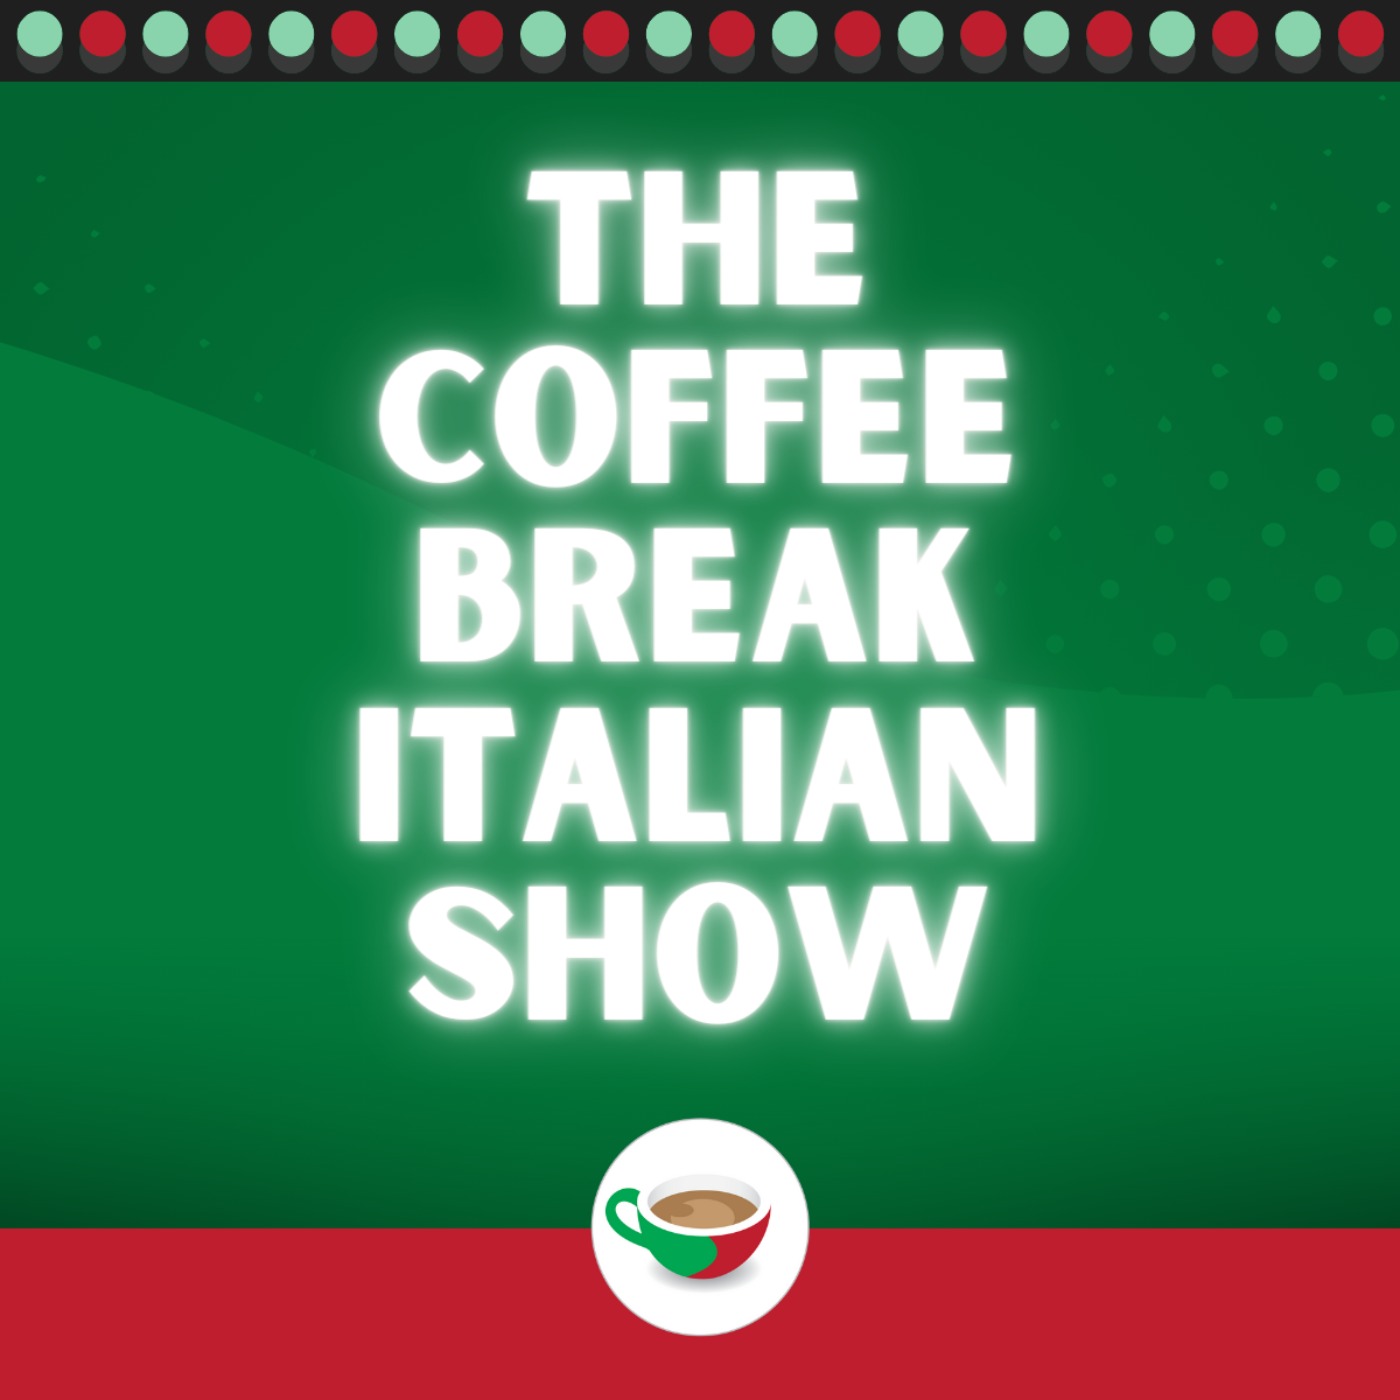 A guide to definite articles in Italian | The Coffee Break Italian Show 1.07